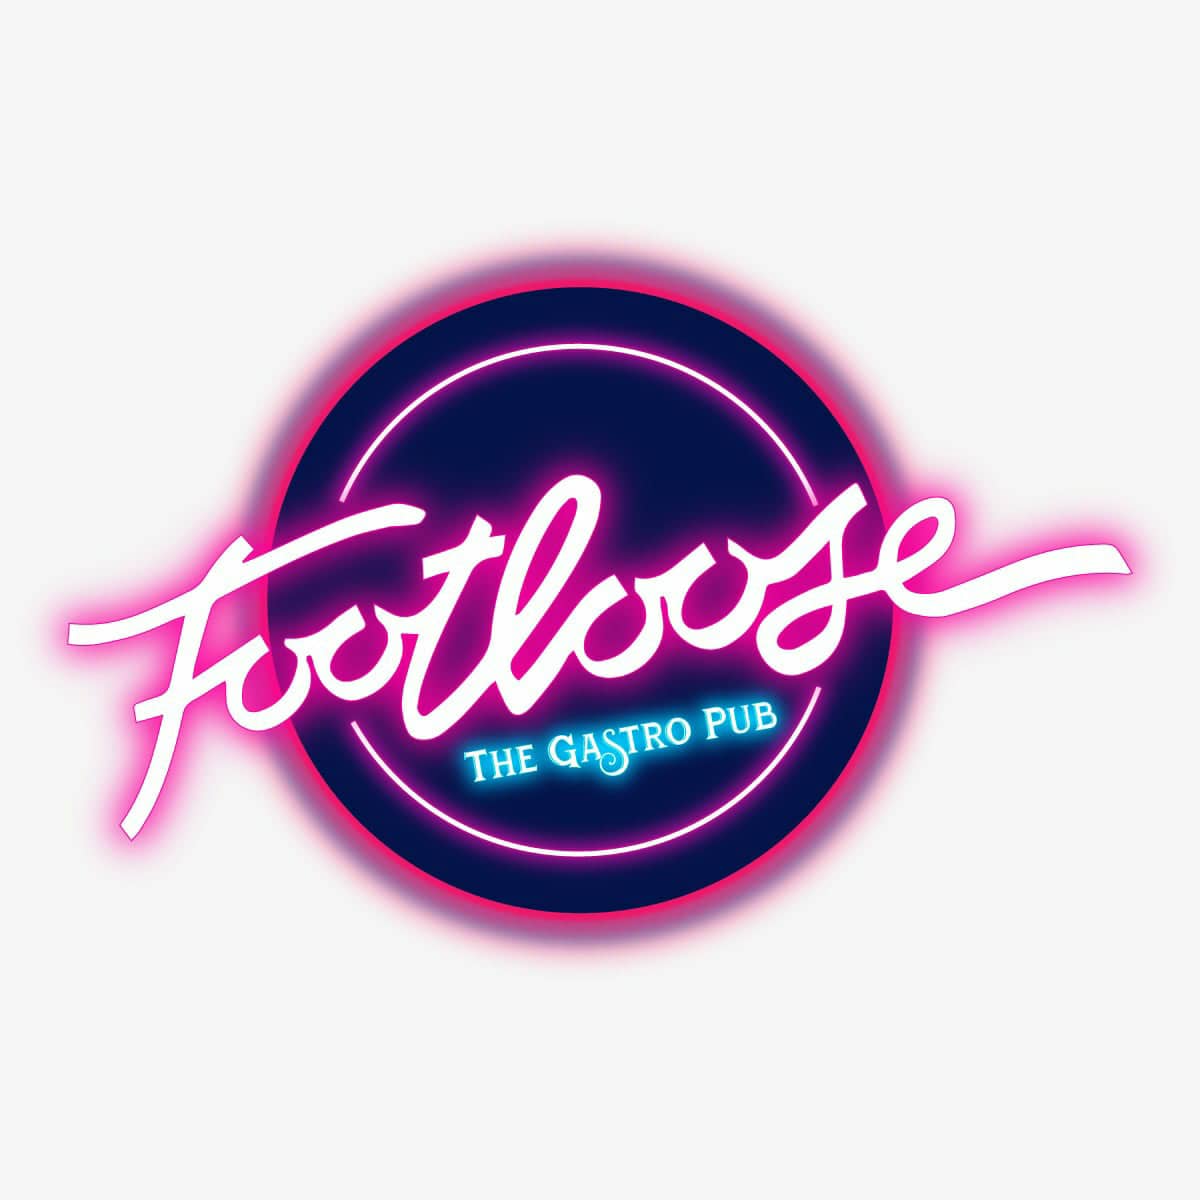 Footloose - The Gastro Pub